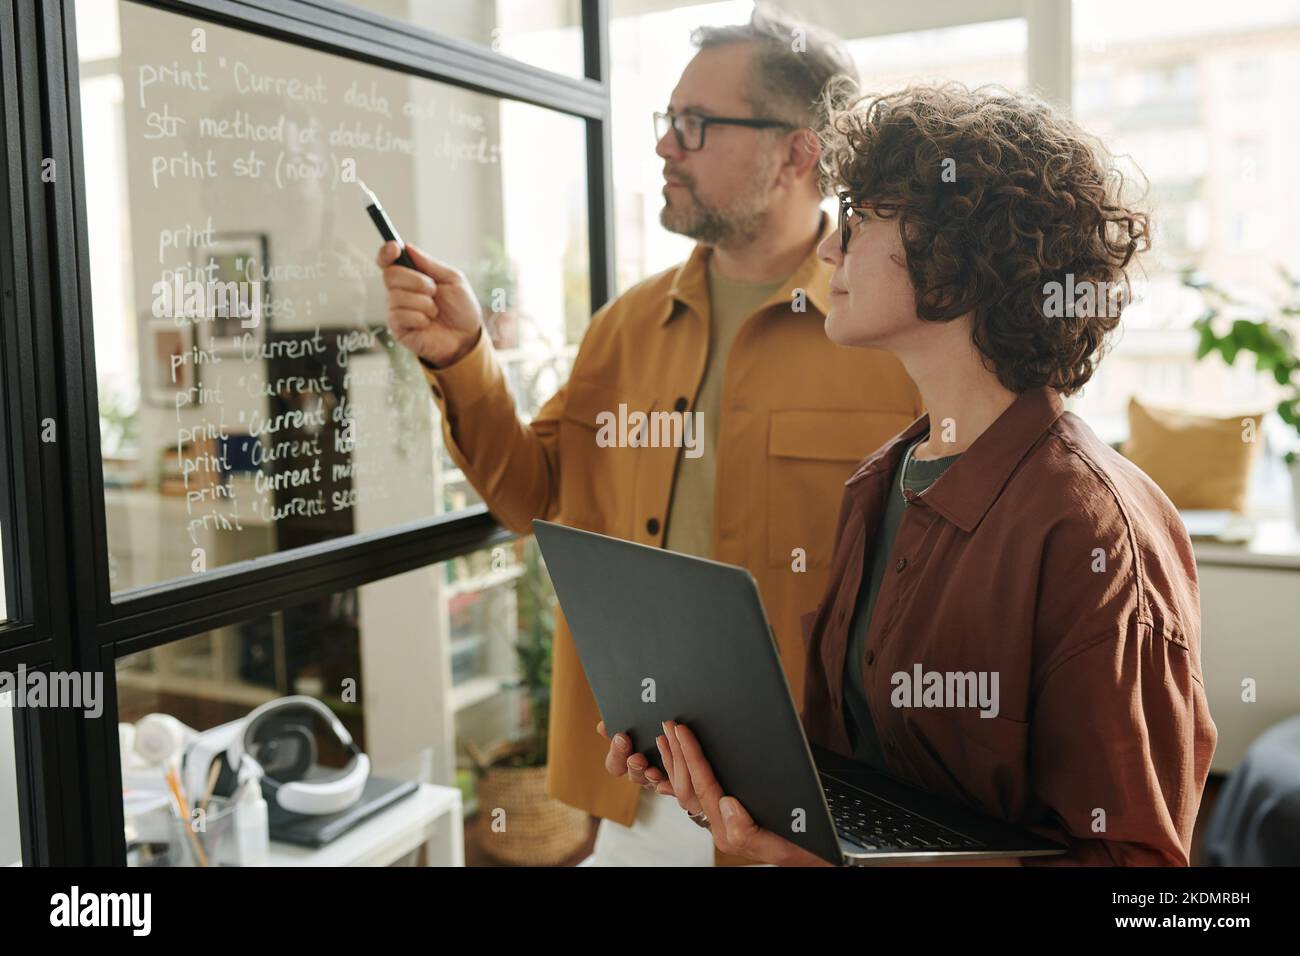 Mujer joven con un ordenador portátil mirando las notas en una pizarra transparente y escuchando a un compañero explicándolas durante la presentación Foto de stock